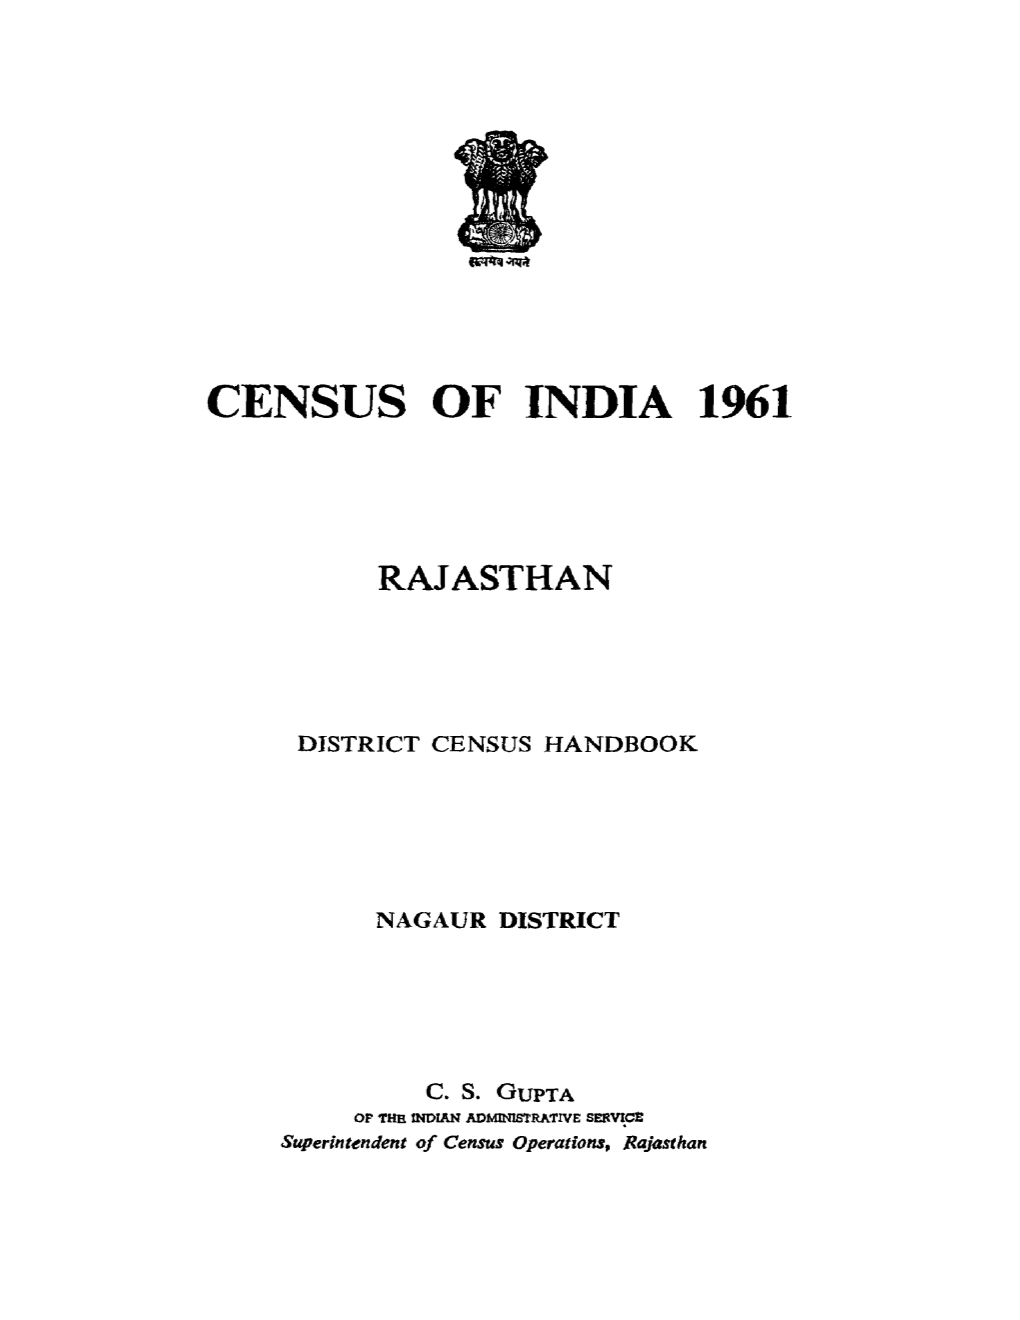 District Census Handbook, Nagaur, Rajasthan